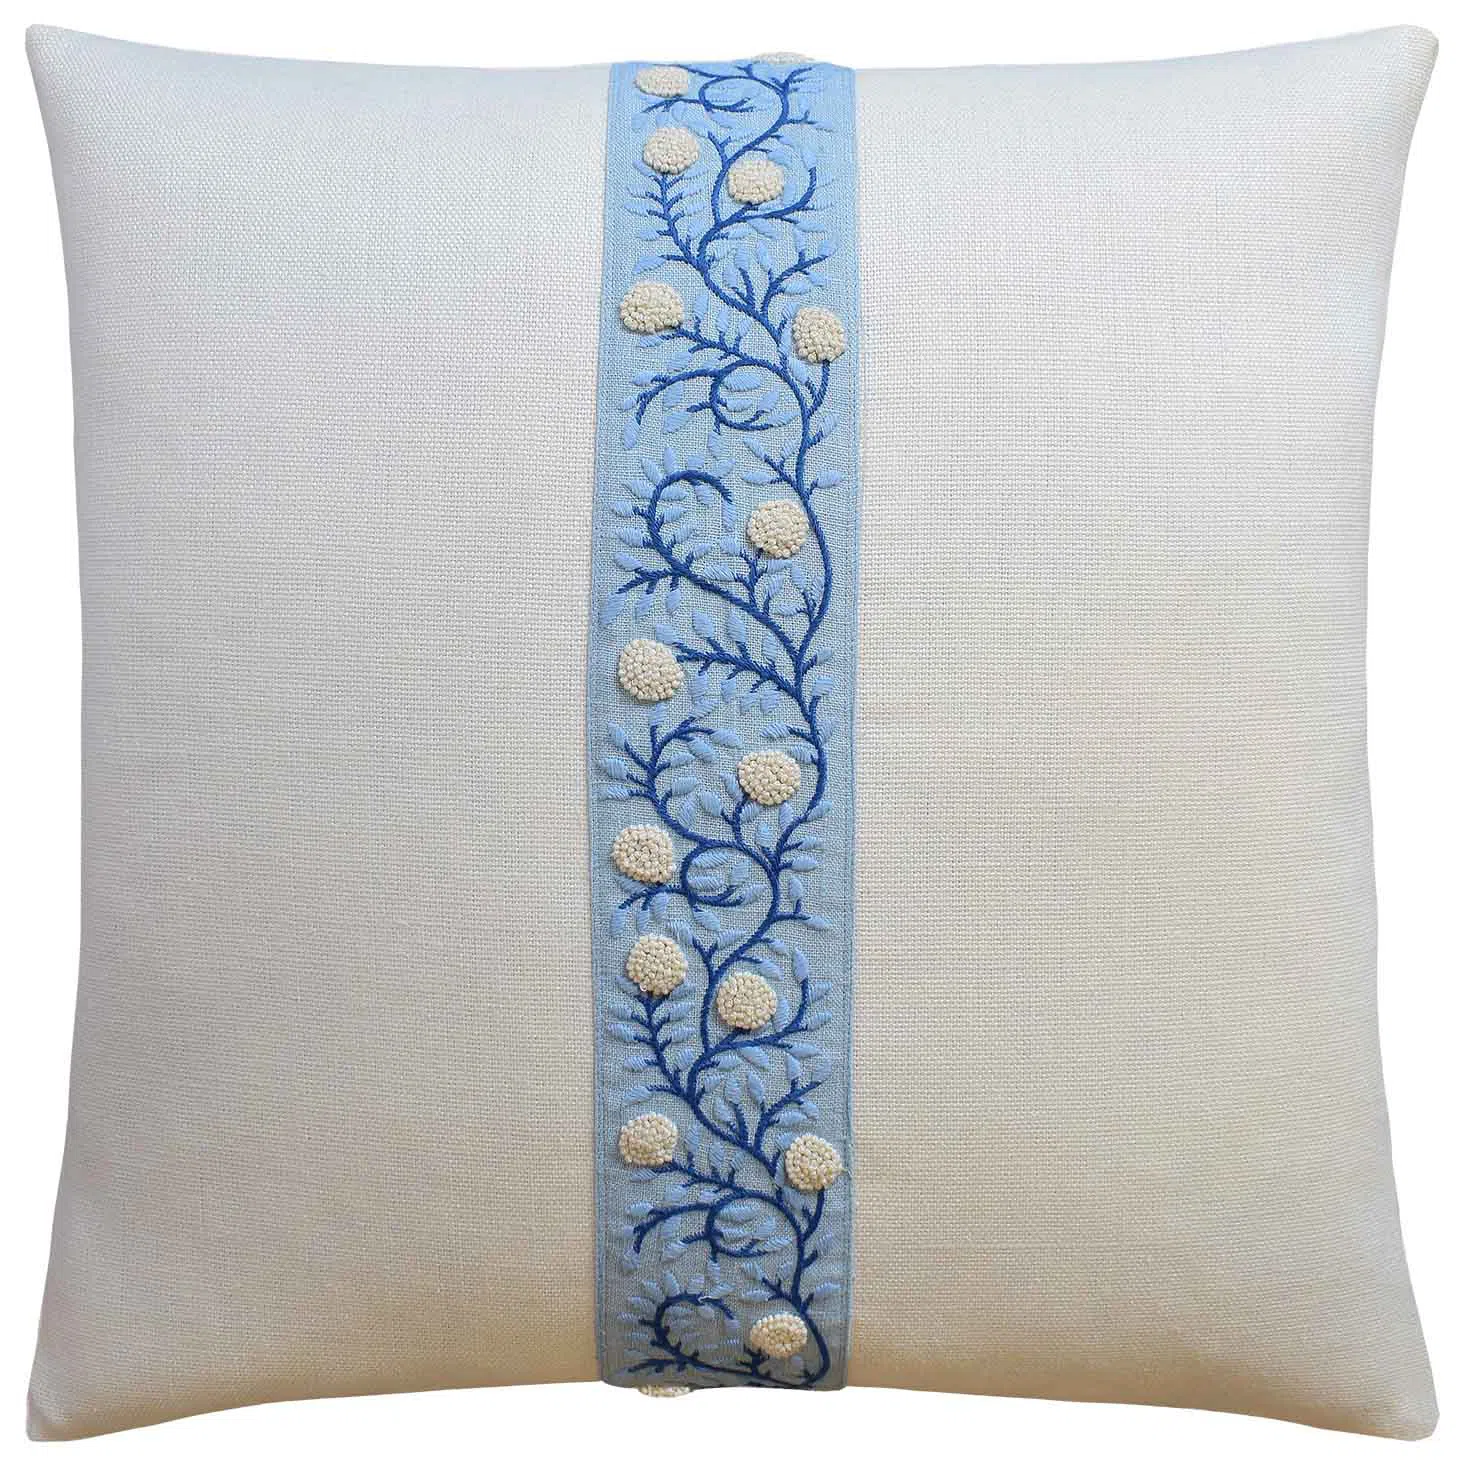 Anza Borrego Blue Throw Pillow by Ryan Studio, 22 x 22 / Borrego Blue